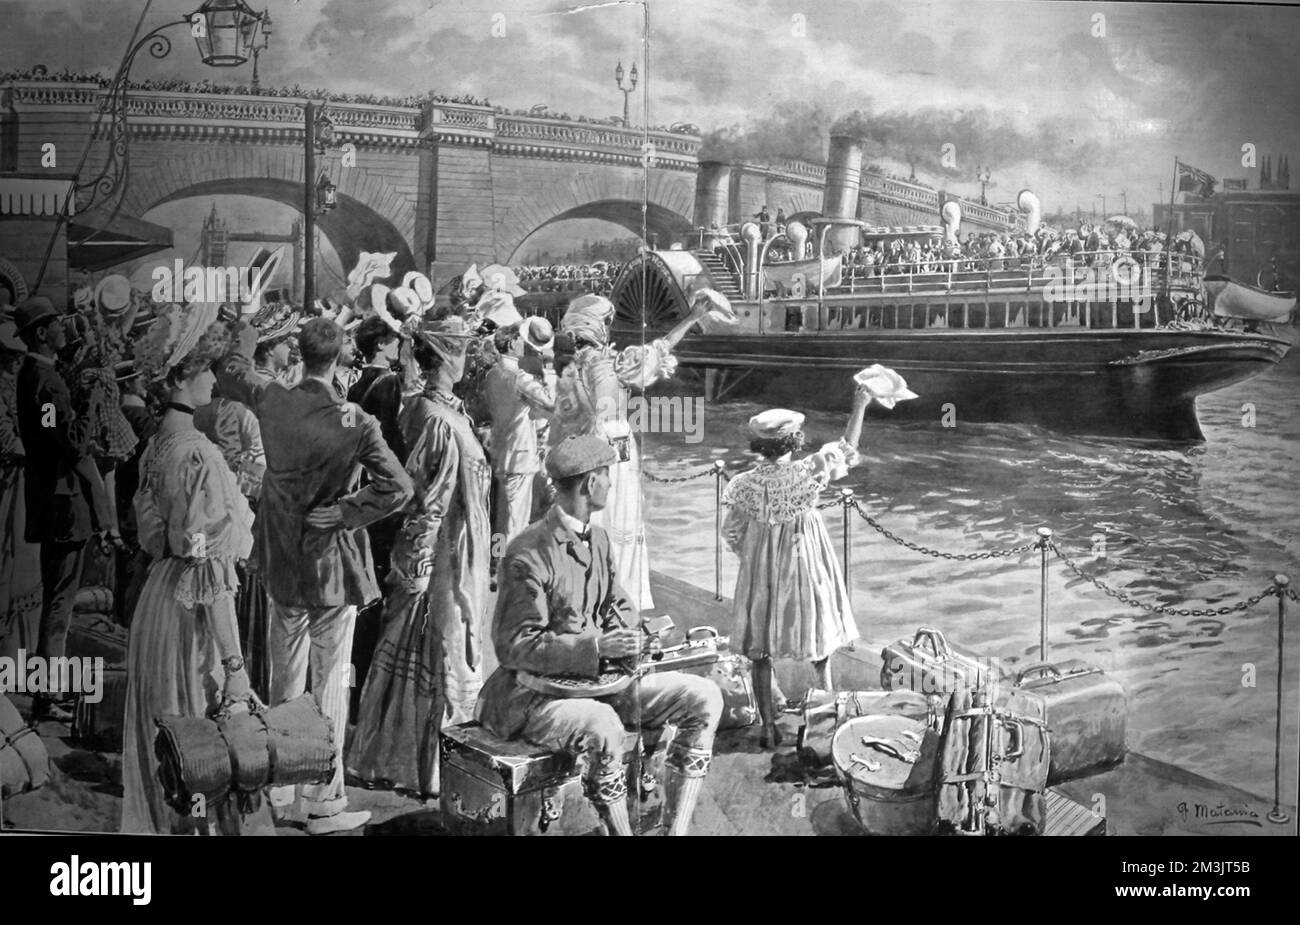 New Palace Steamer, le 'Koh-i-noor' quittant Old Swan Pier pour Margate. La sphère a qualifié le voyage de « voyage le long de la rivière qui apporte la santé aux Londoniens fatigués ». Date: 1906 Banque D'Images